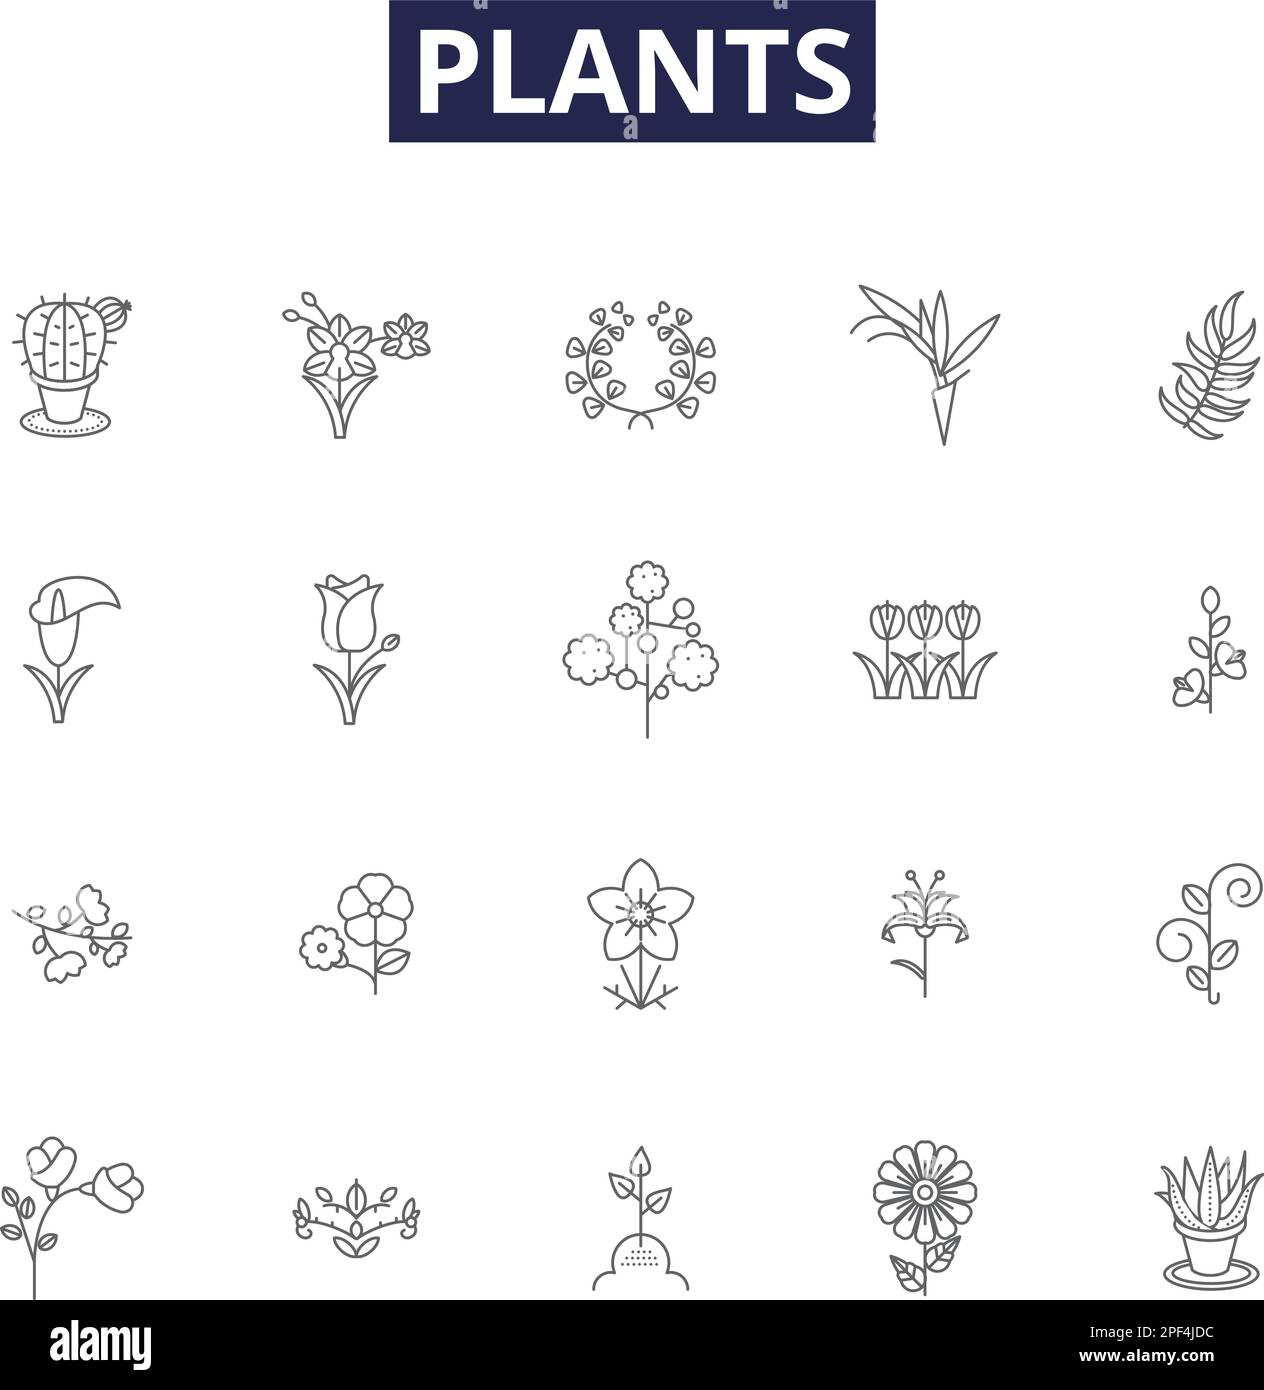 Icone e segni vettoriali linea piante. Fotosintesi, Foliage, Botany, seme, radice, Abbondanza, sparare, insieme di illustrazione vettoriale di contorno di vegetazione Illustrazione Vettoriale